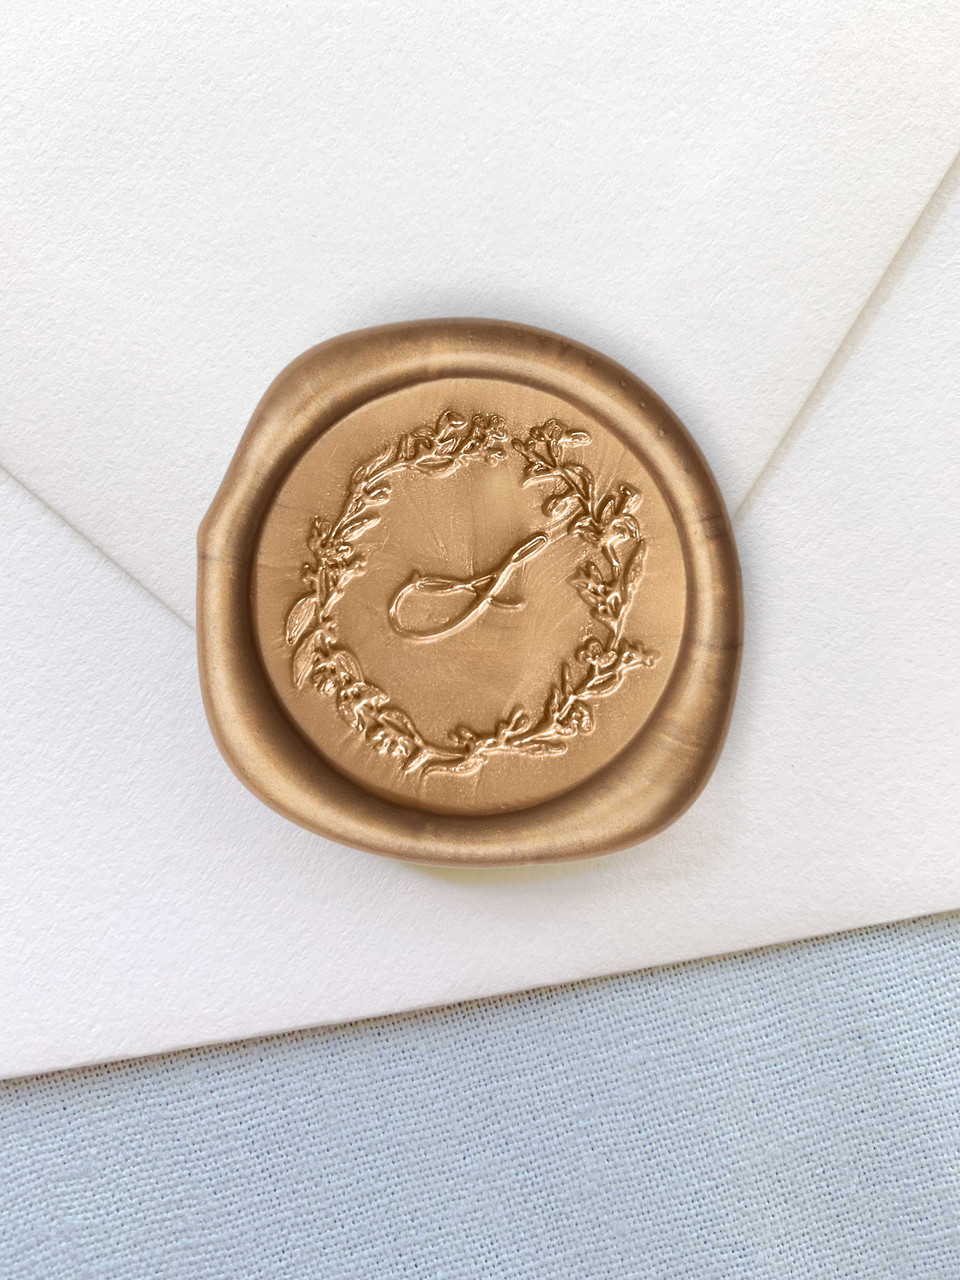 Monogram Wax Seal Stamp, Laurels Wax Stamp, RSVP Envelope Seal